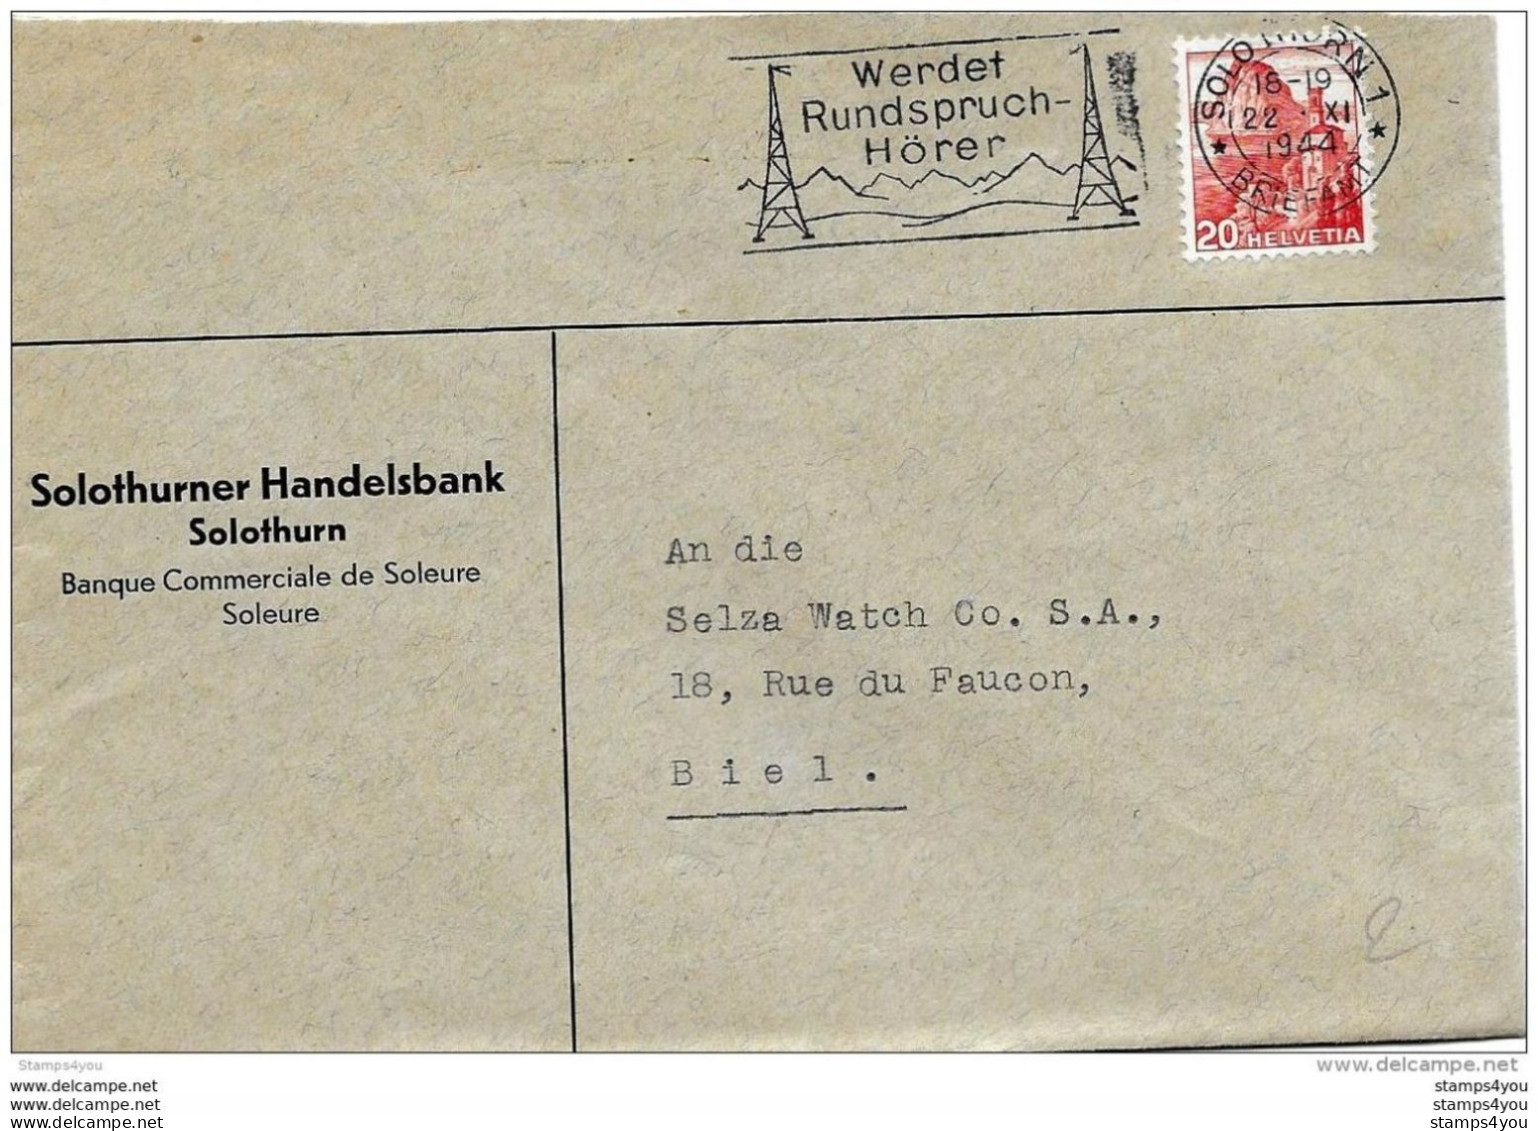 76 - 32 - Enveloppe Avec Oblit Mécanique "Werdet Rundspruch Hörer" 1944 - Postmark Collection